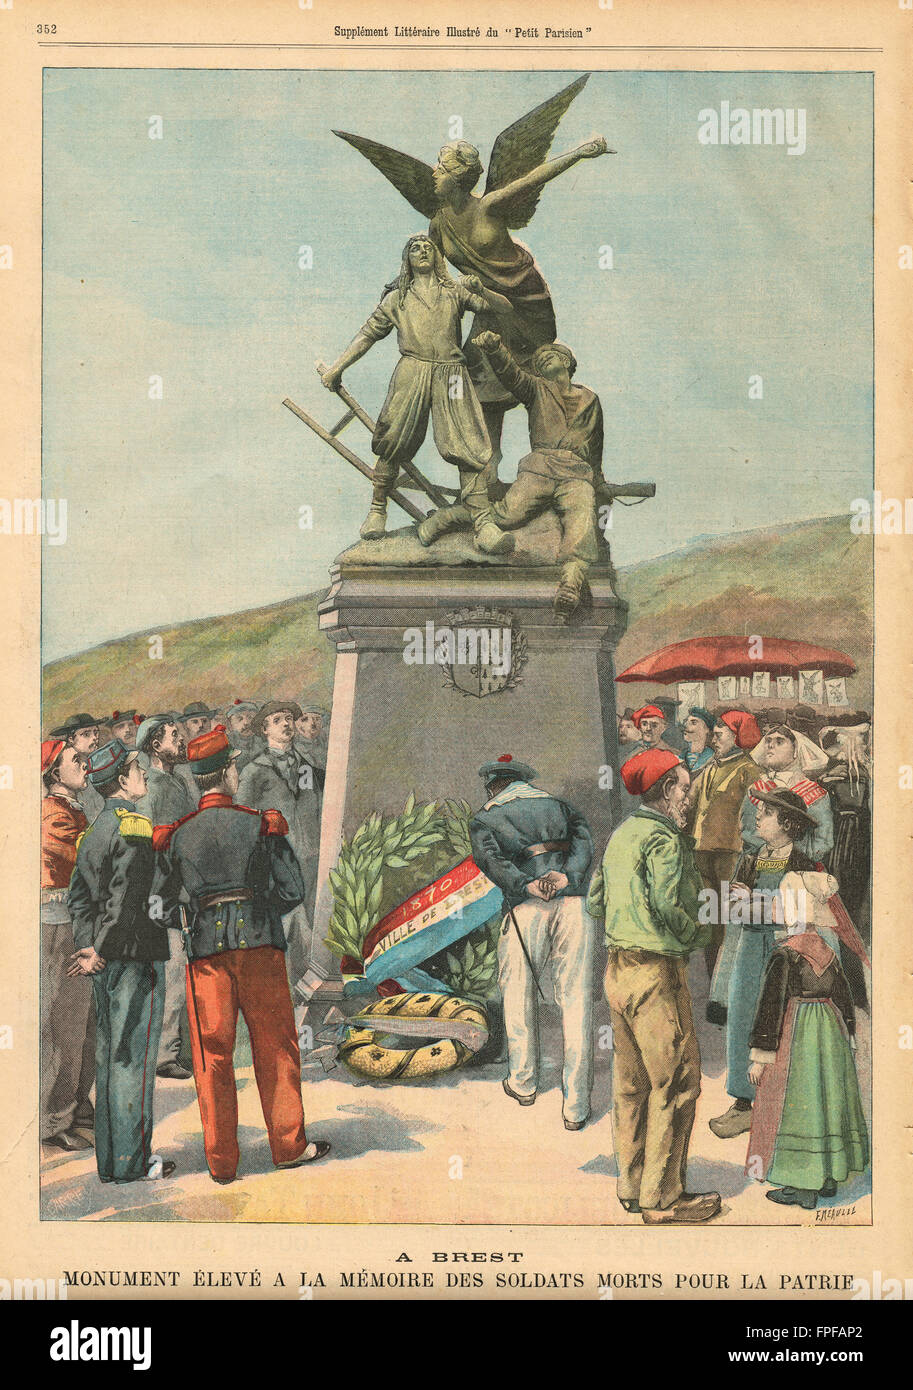 Monument de guerre franco-prussienne Brest 1900. Illustration du petit parisien dans le journal français illustré Banque D'Images